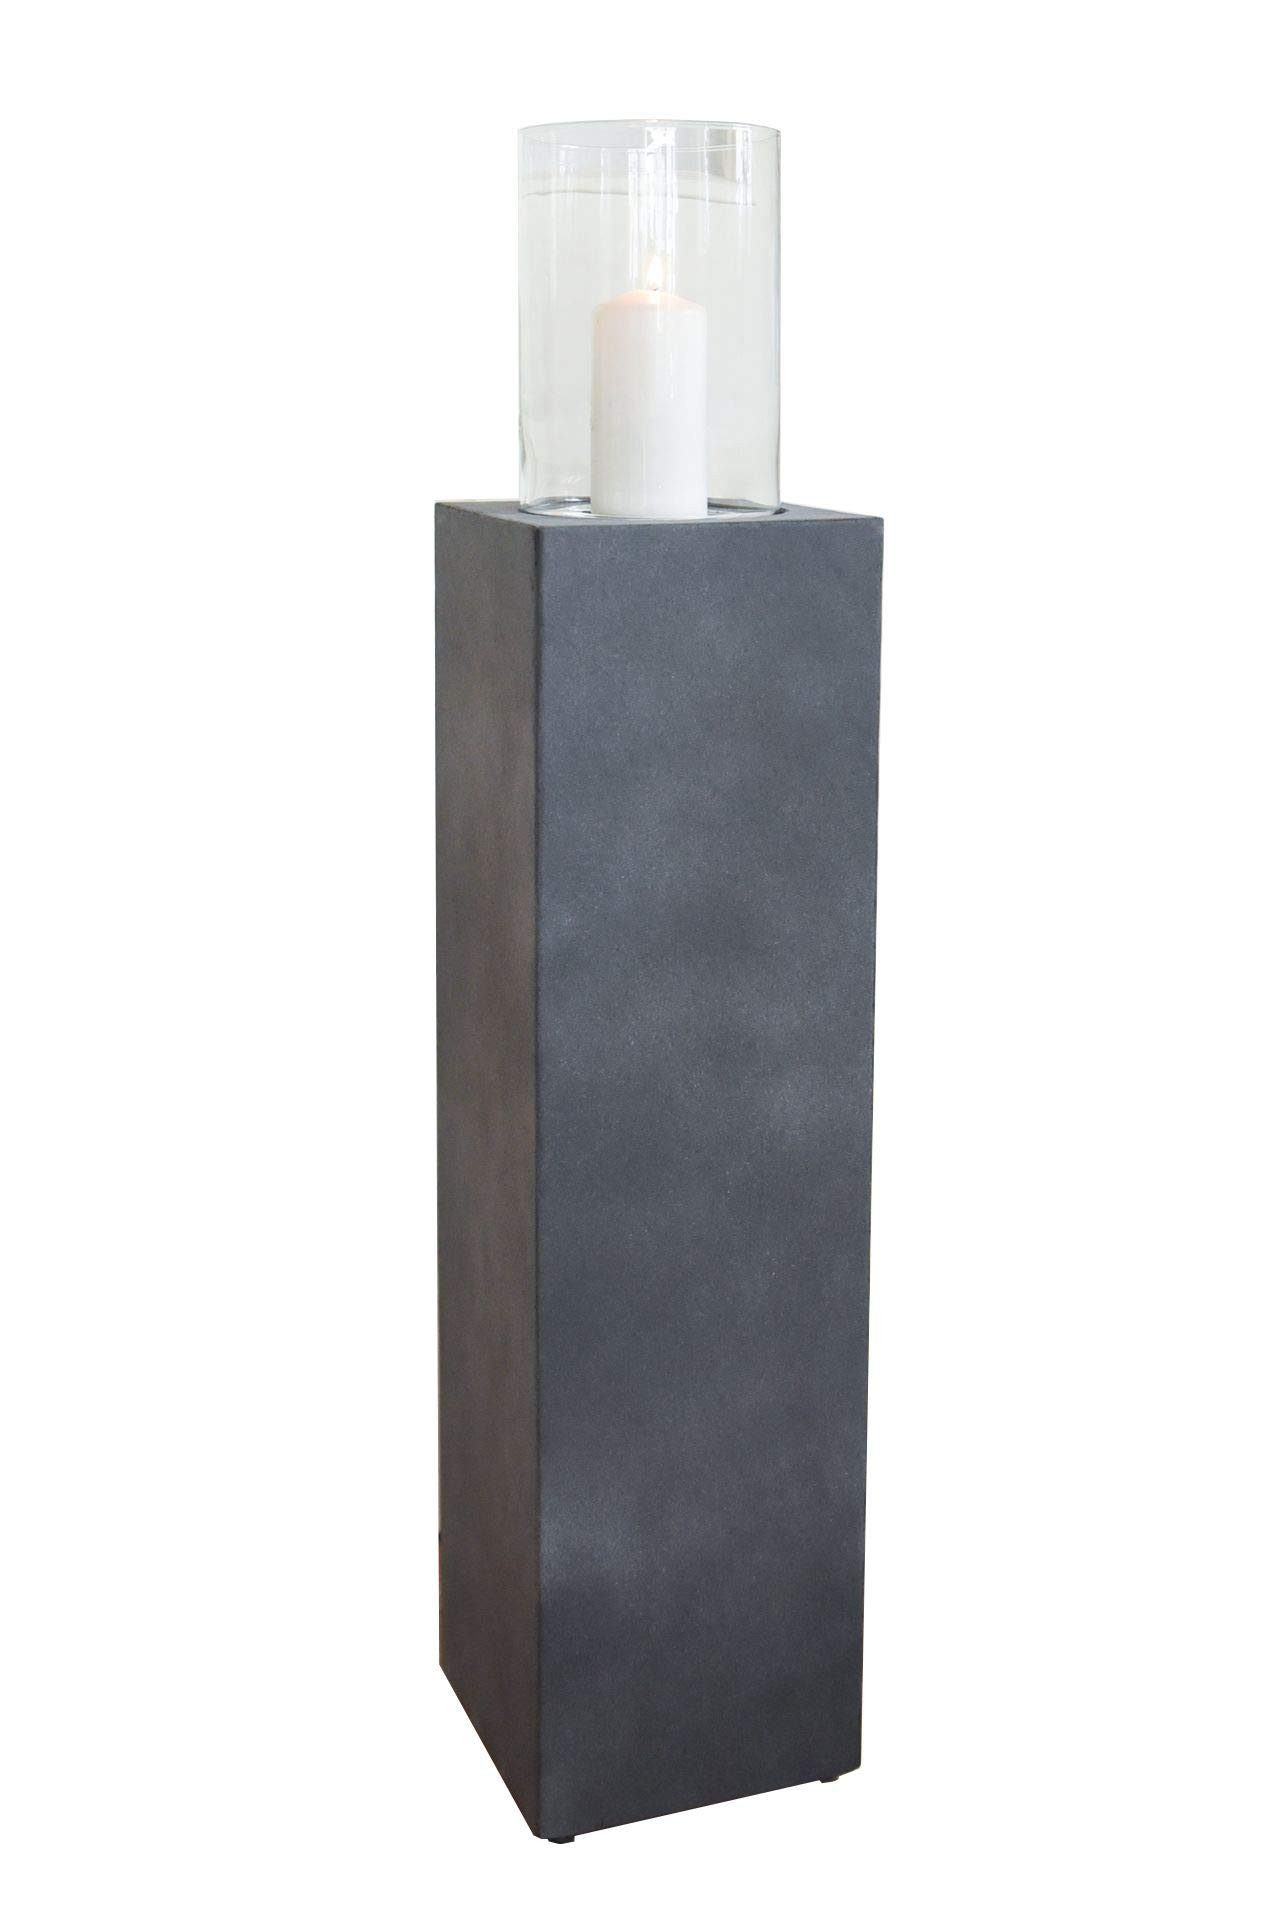 VIVANNO Bodenwindlicht Windlichtsäule Windlicht Kerzenhalter Fiberzement "Lumira", Grau